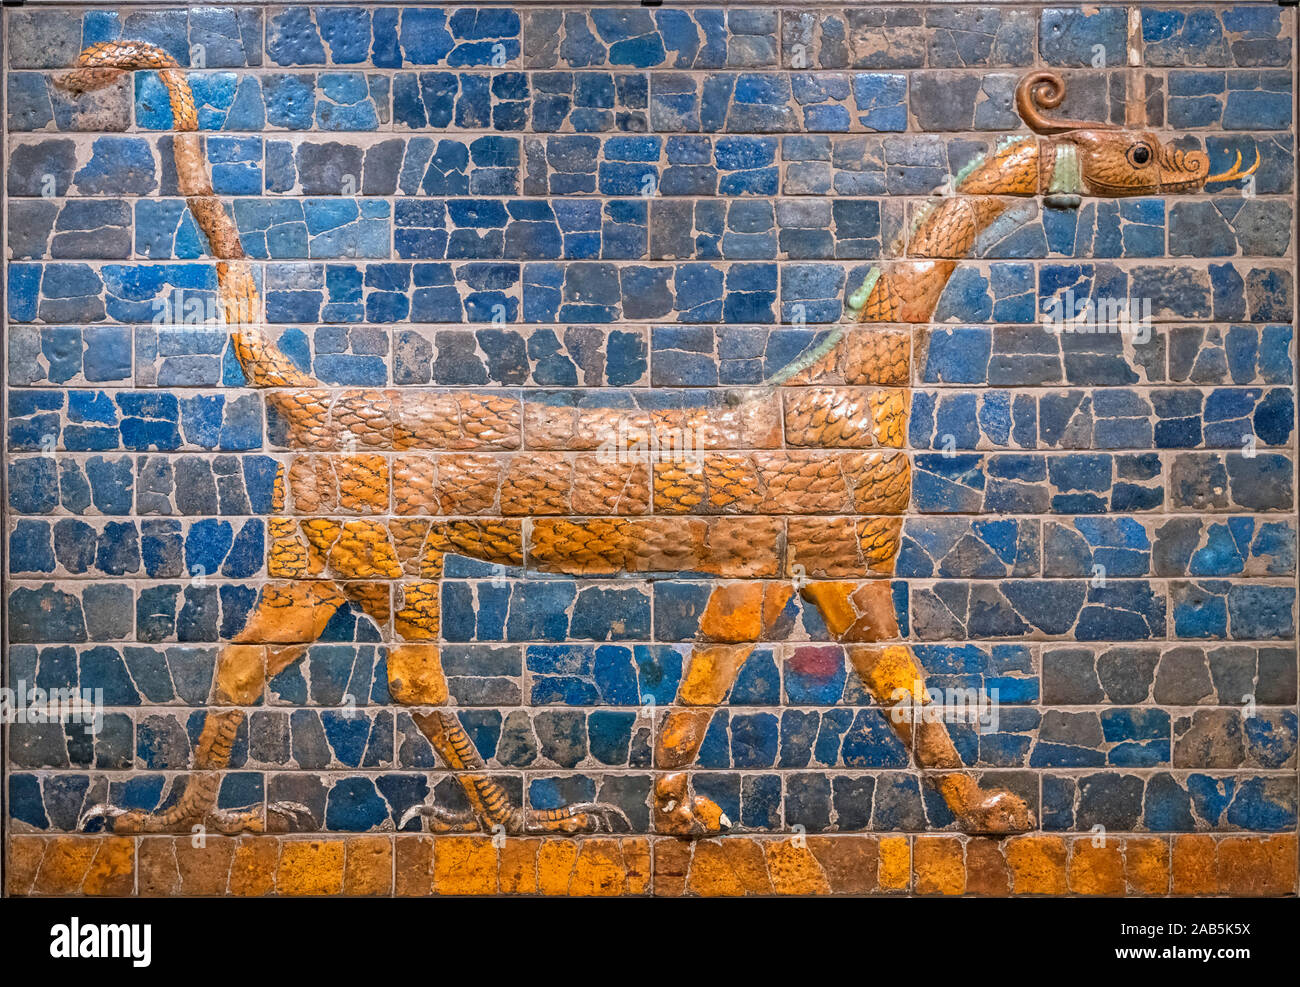 Mushhushshu babylonien-dragon, symbole du dieu Marduk, 604 - 562 avant J.-C., terre cuite vernissée et brique moulée. Le dragon s'était une partie de la décoration de la porte d'Ishtar dans l'ancienne ville de Babylone. Banque D'Images